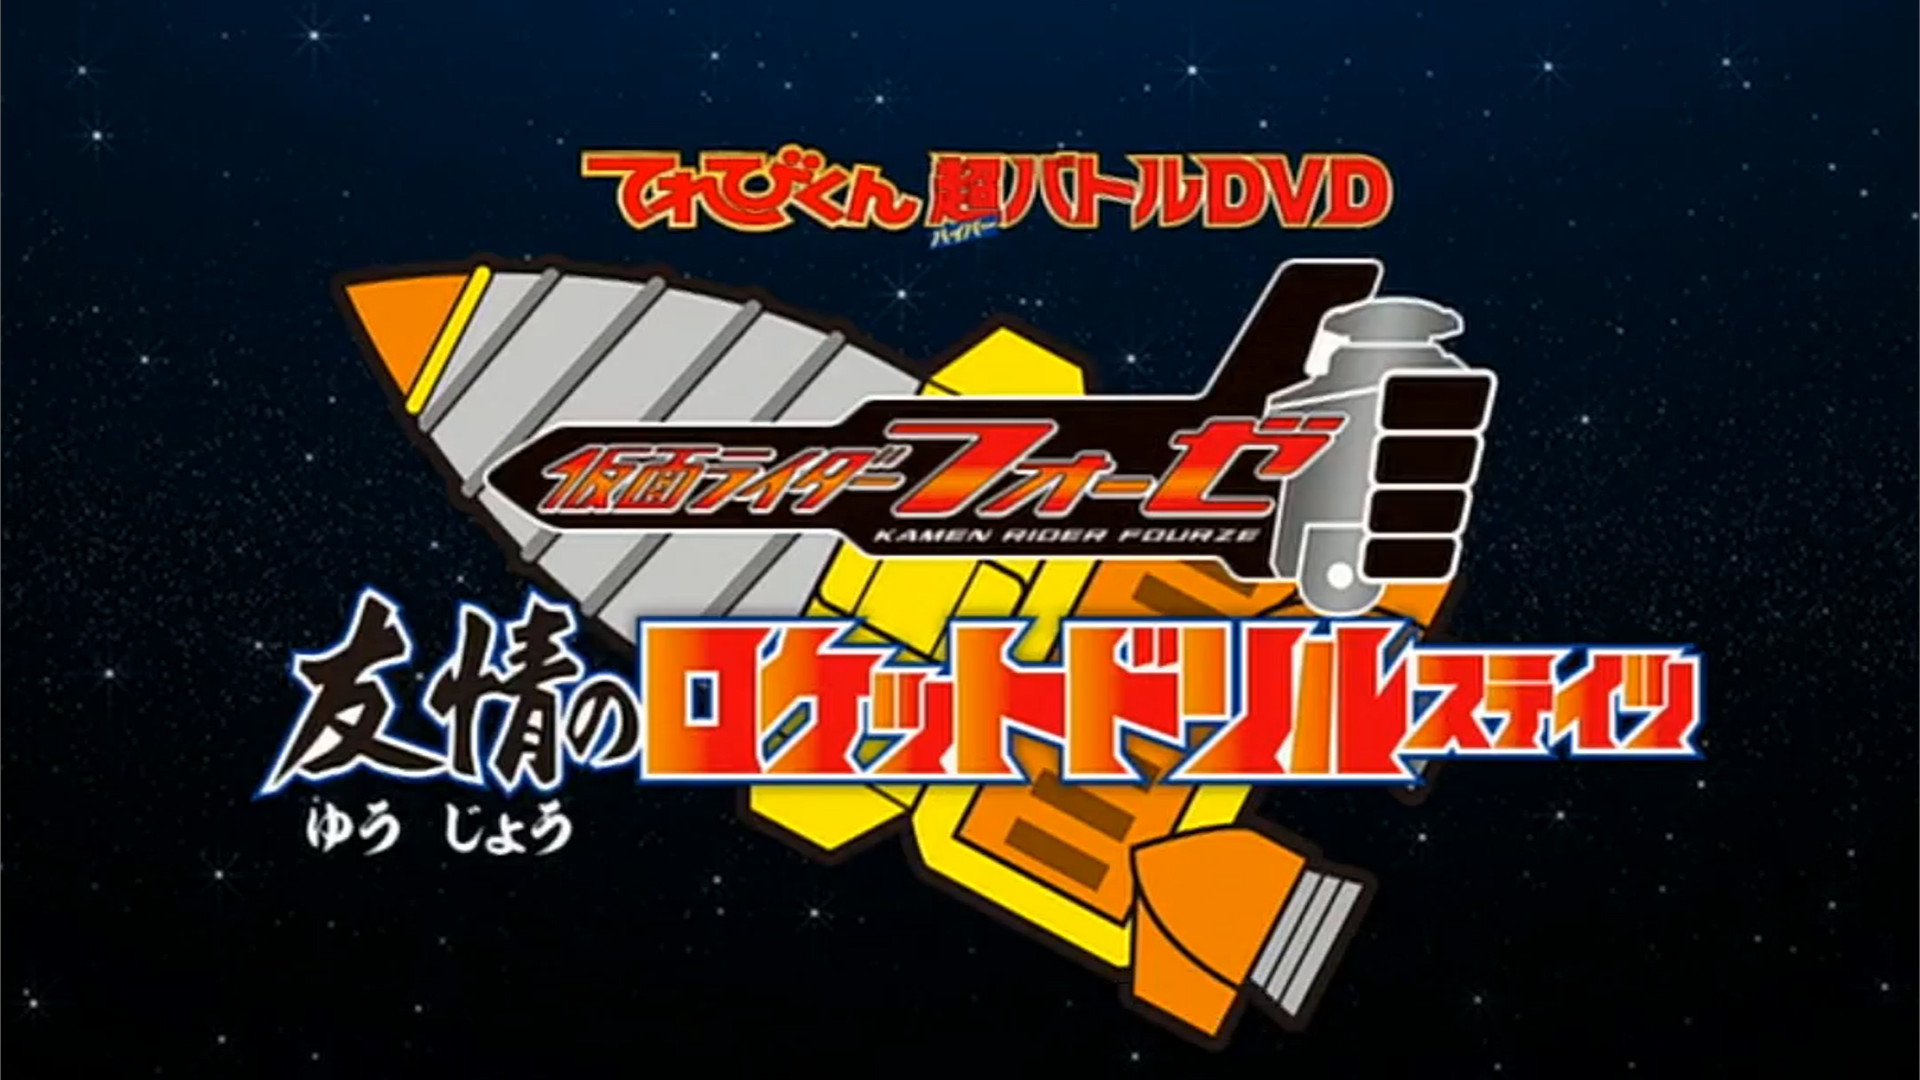 Kamen Rider Fourze: Rocket Drill States of Friendship | Kamen